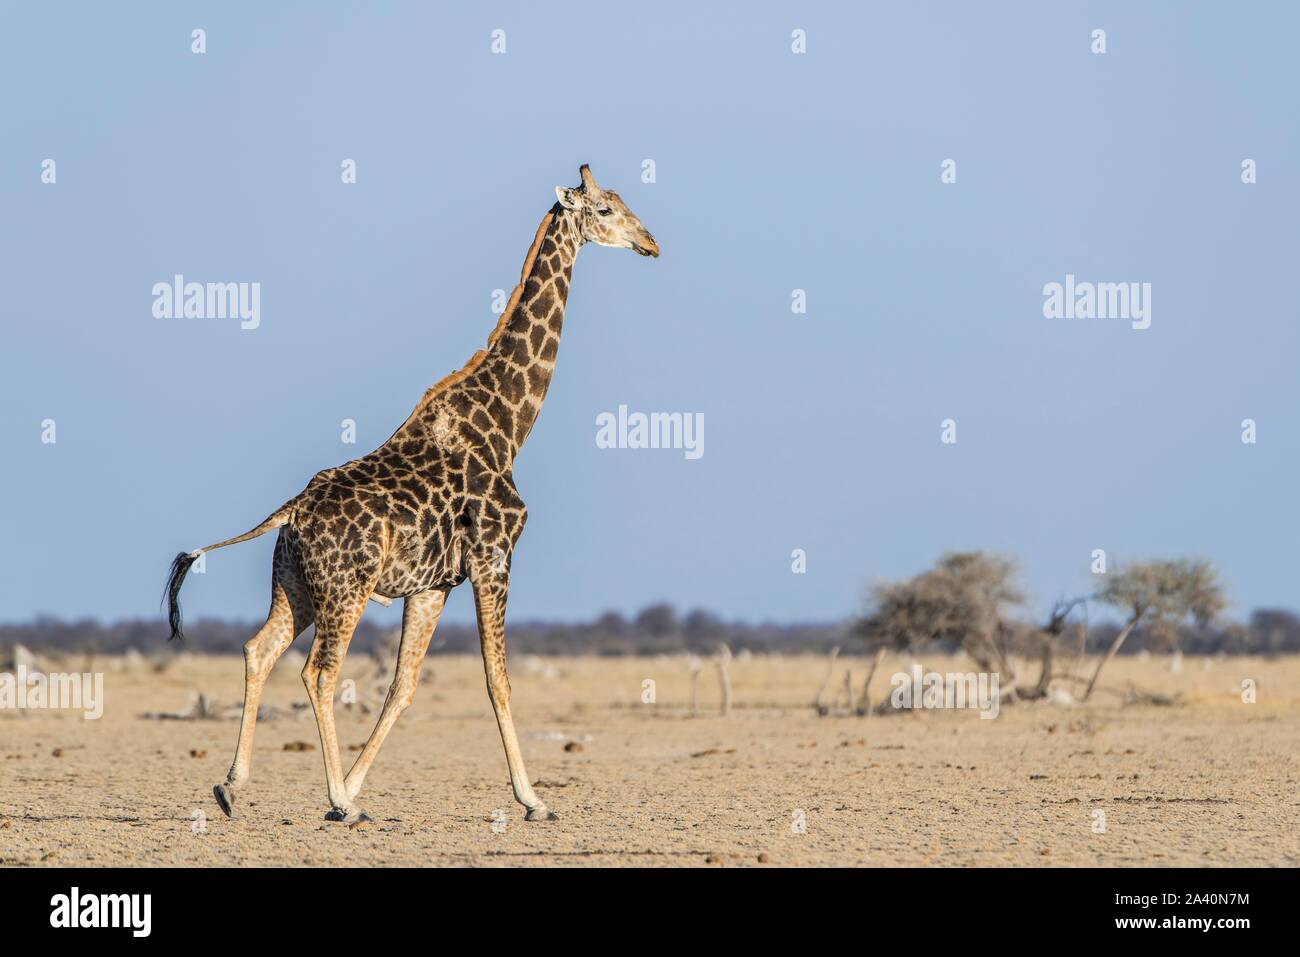 Angolan Giraffe (Giraffa camelopardalis angolensis), injured, running in dry savannah, Nxai Pan National Park, Ngamiland, Botswana Stock Photo